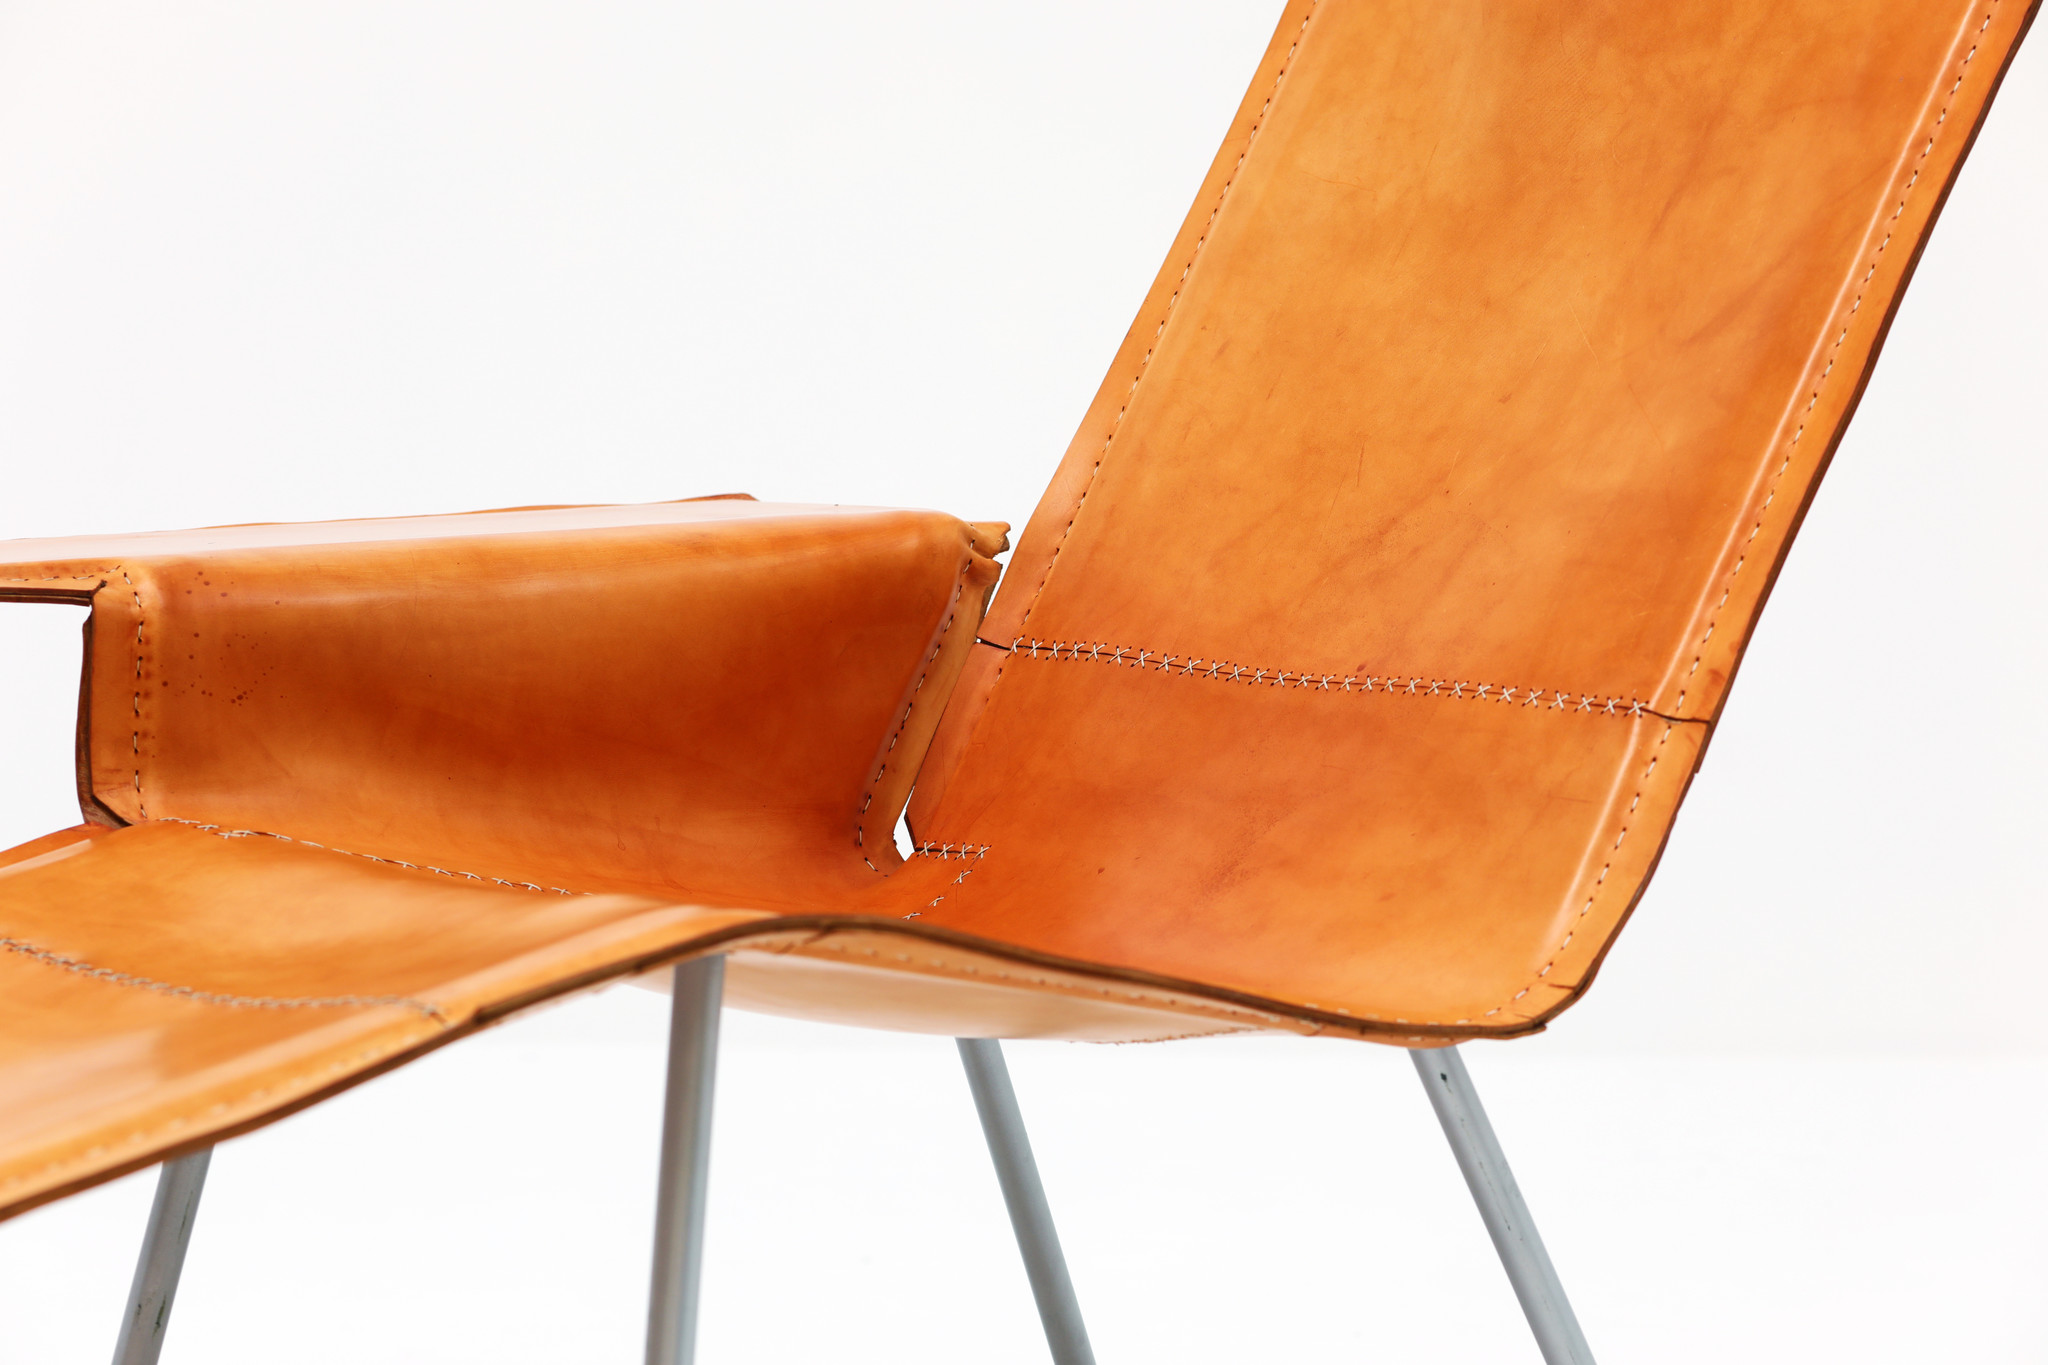 Prototype Maarten Van Severen Lounge chair par Pastoe, 2004